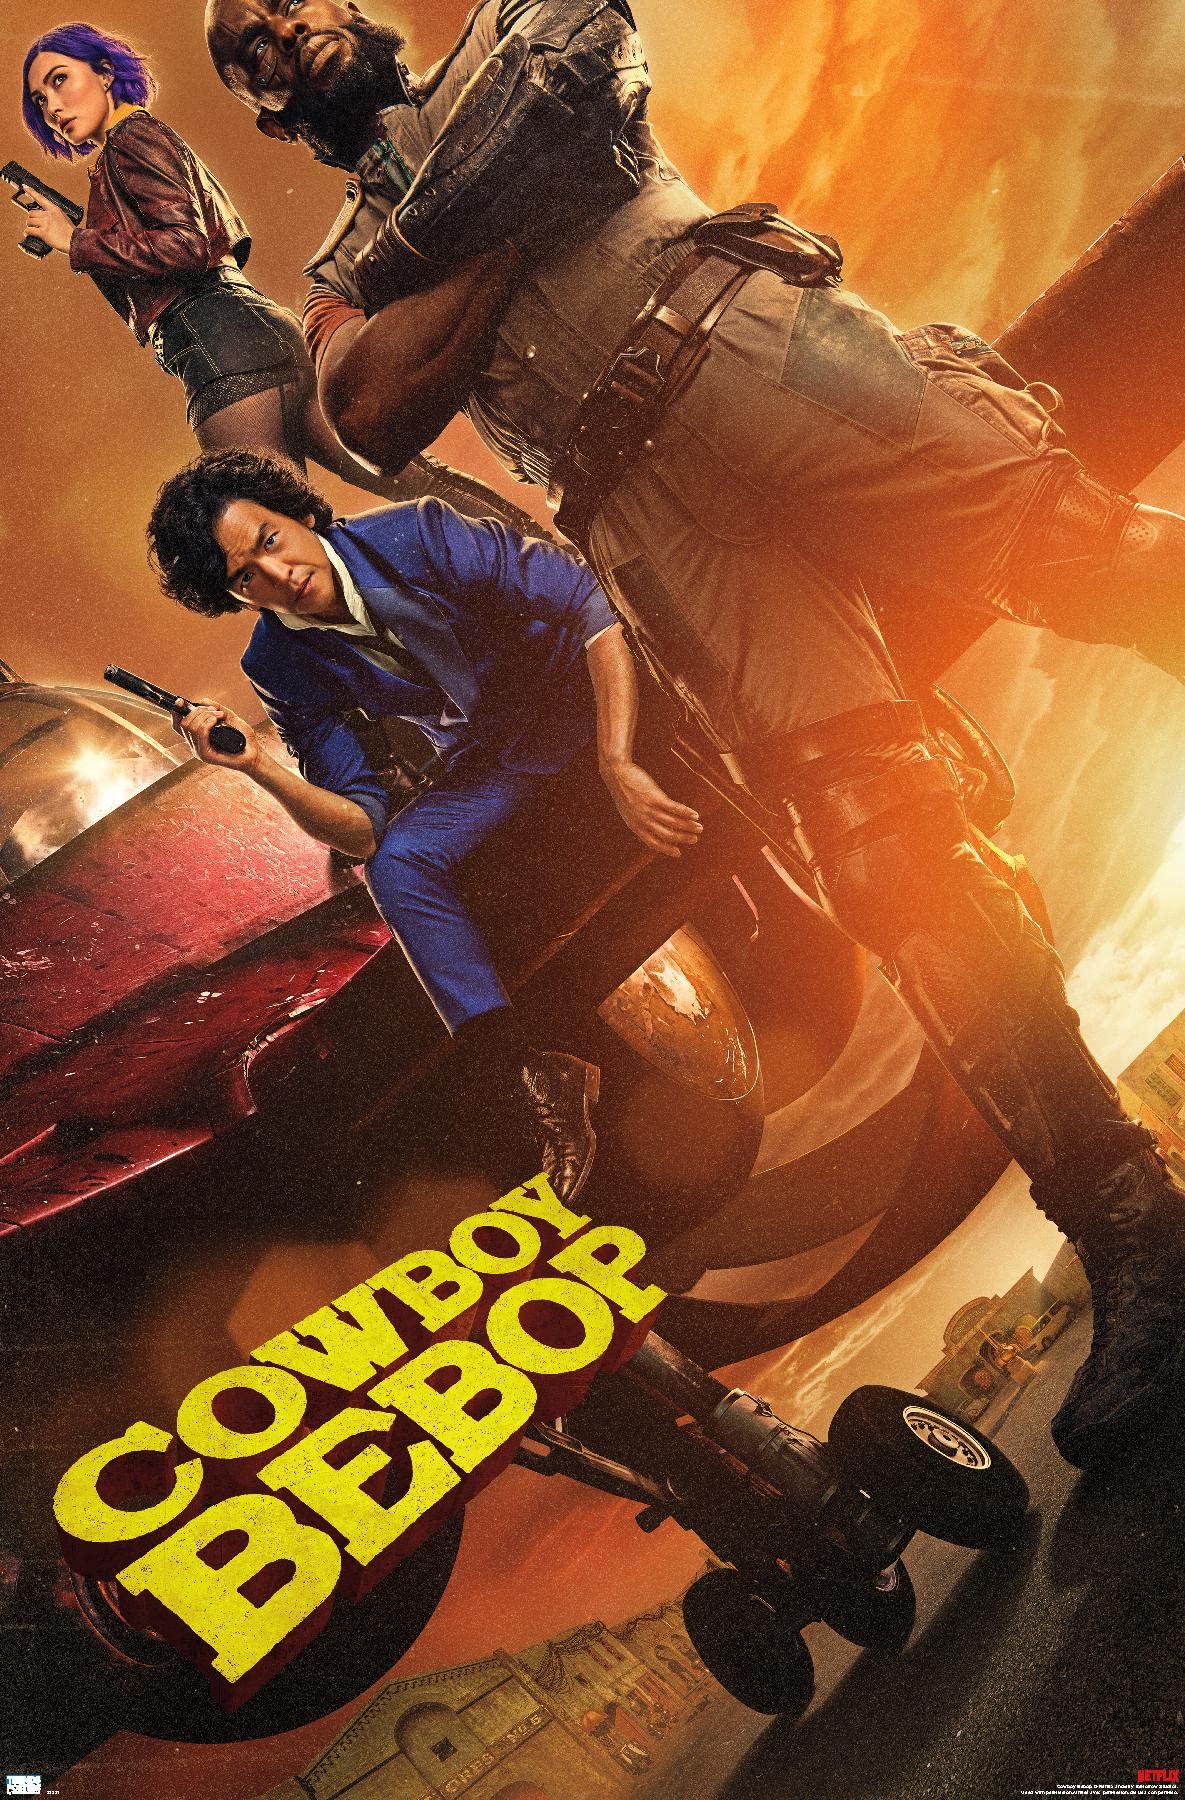 Cowboy Bebop Hd Netflix Poster Wallpapers